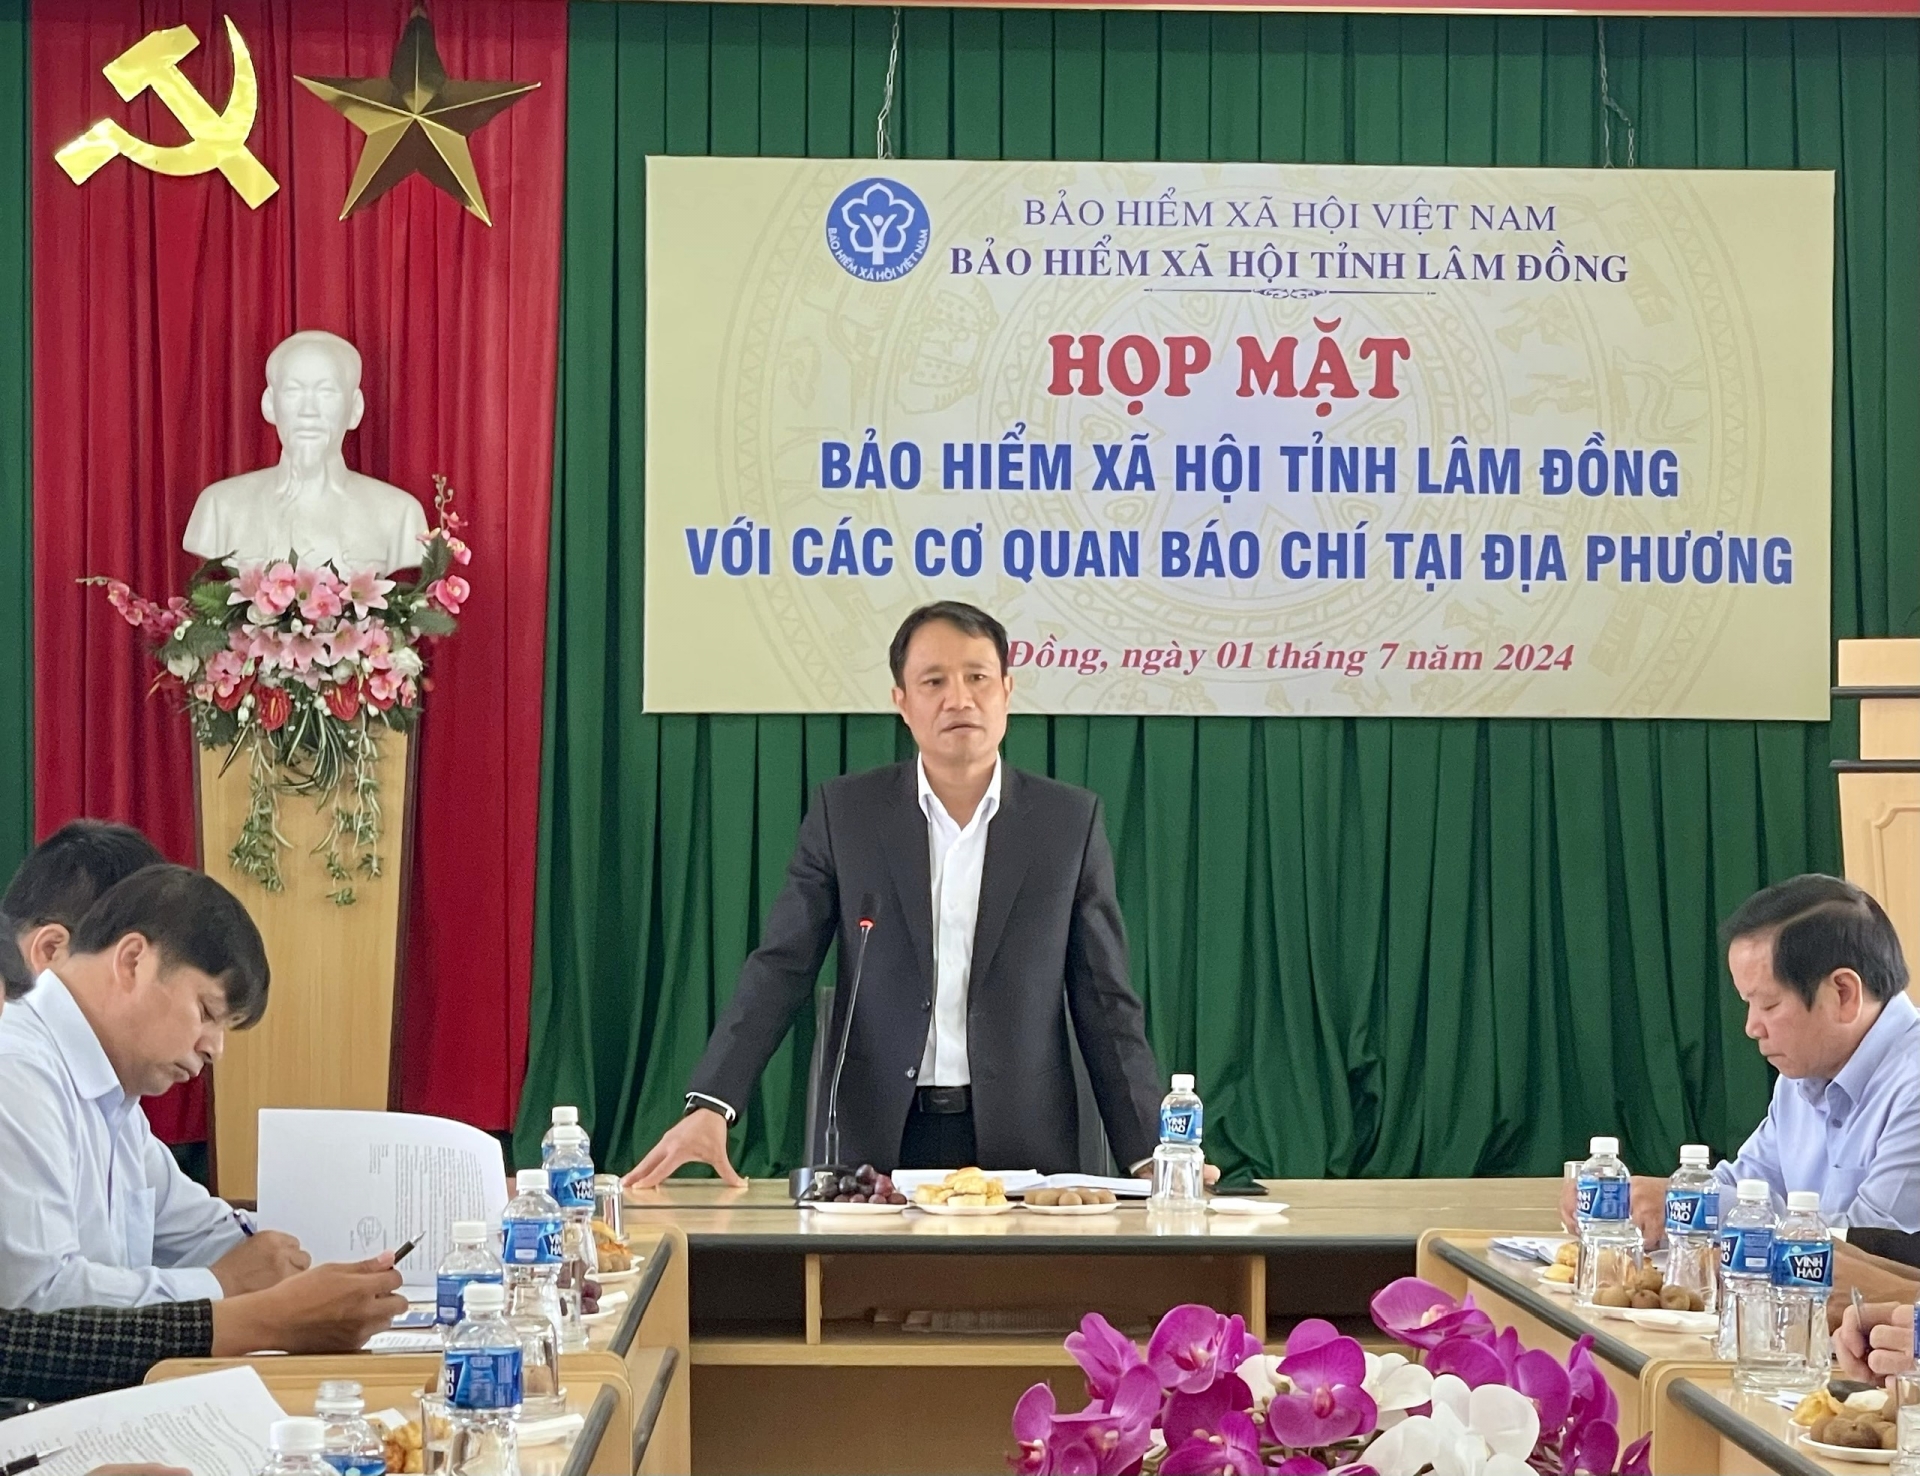 Ông Nguyễn Văn Sơn –Phó Giám đốc BHXH Lâm Đồng phát biểu tại buổi họp mặt